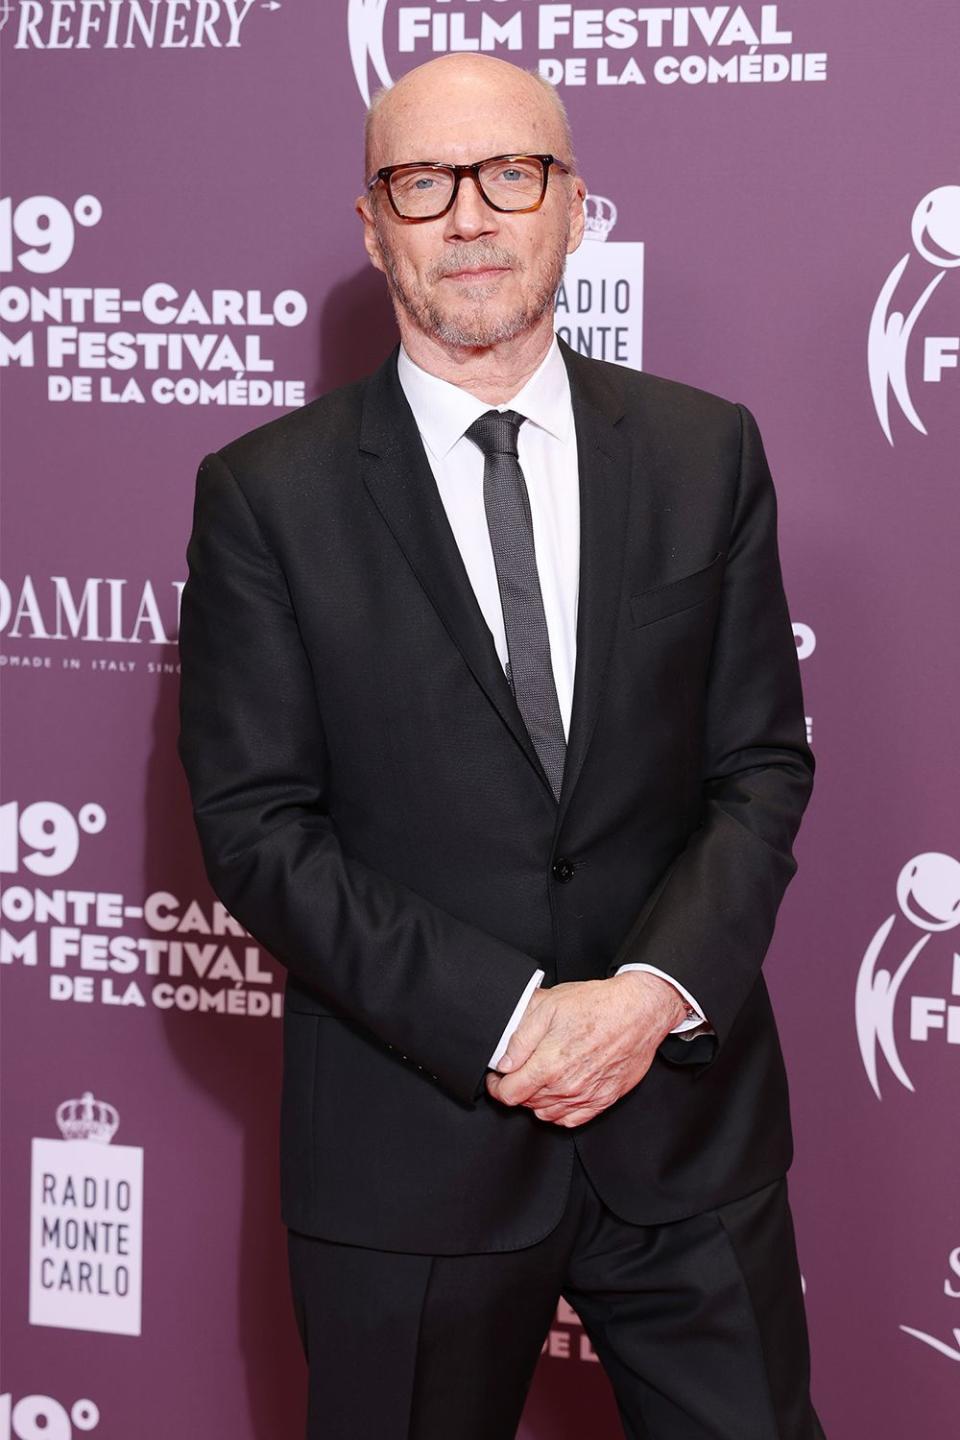 Paul Haggis attends the 19th Monte-Carlo Film Festival De La Comedie at Grimaldi Forum on April 30, 2022 in Monaco, Monaco.